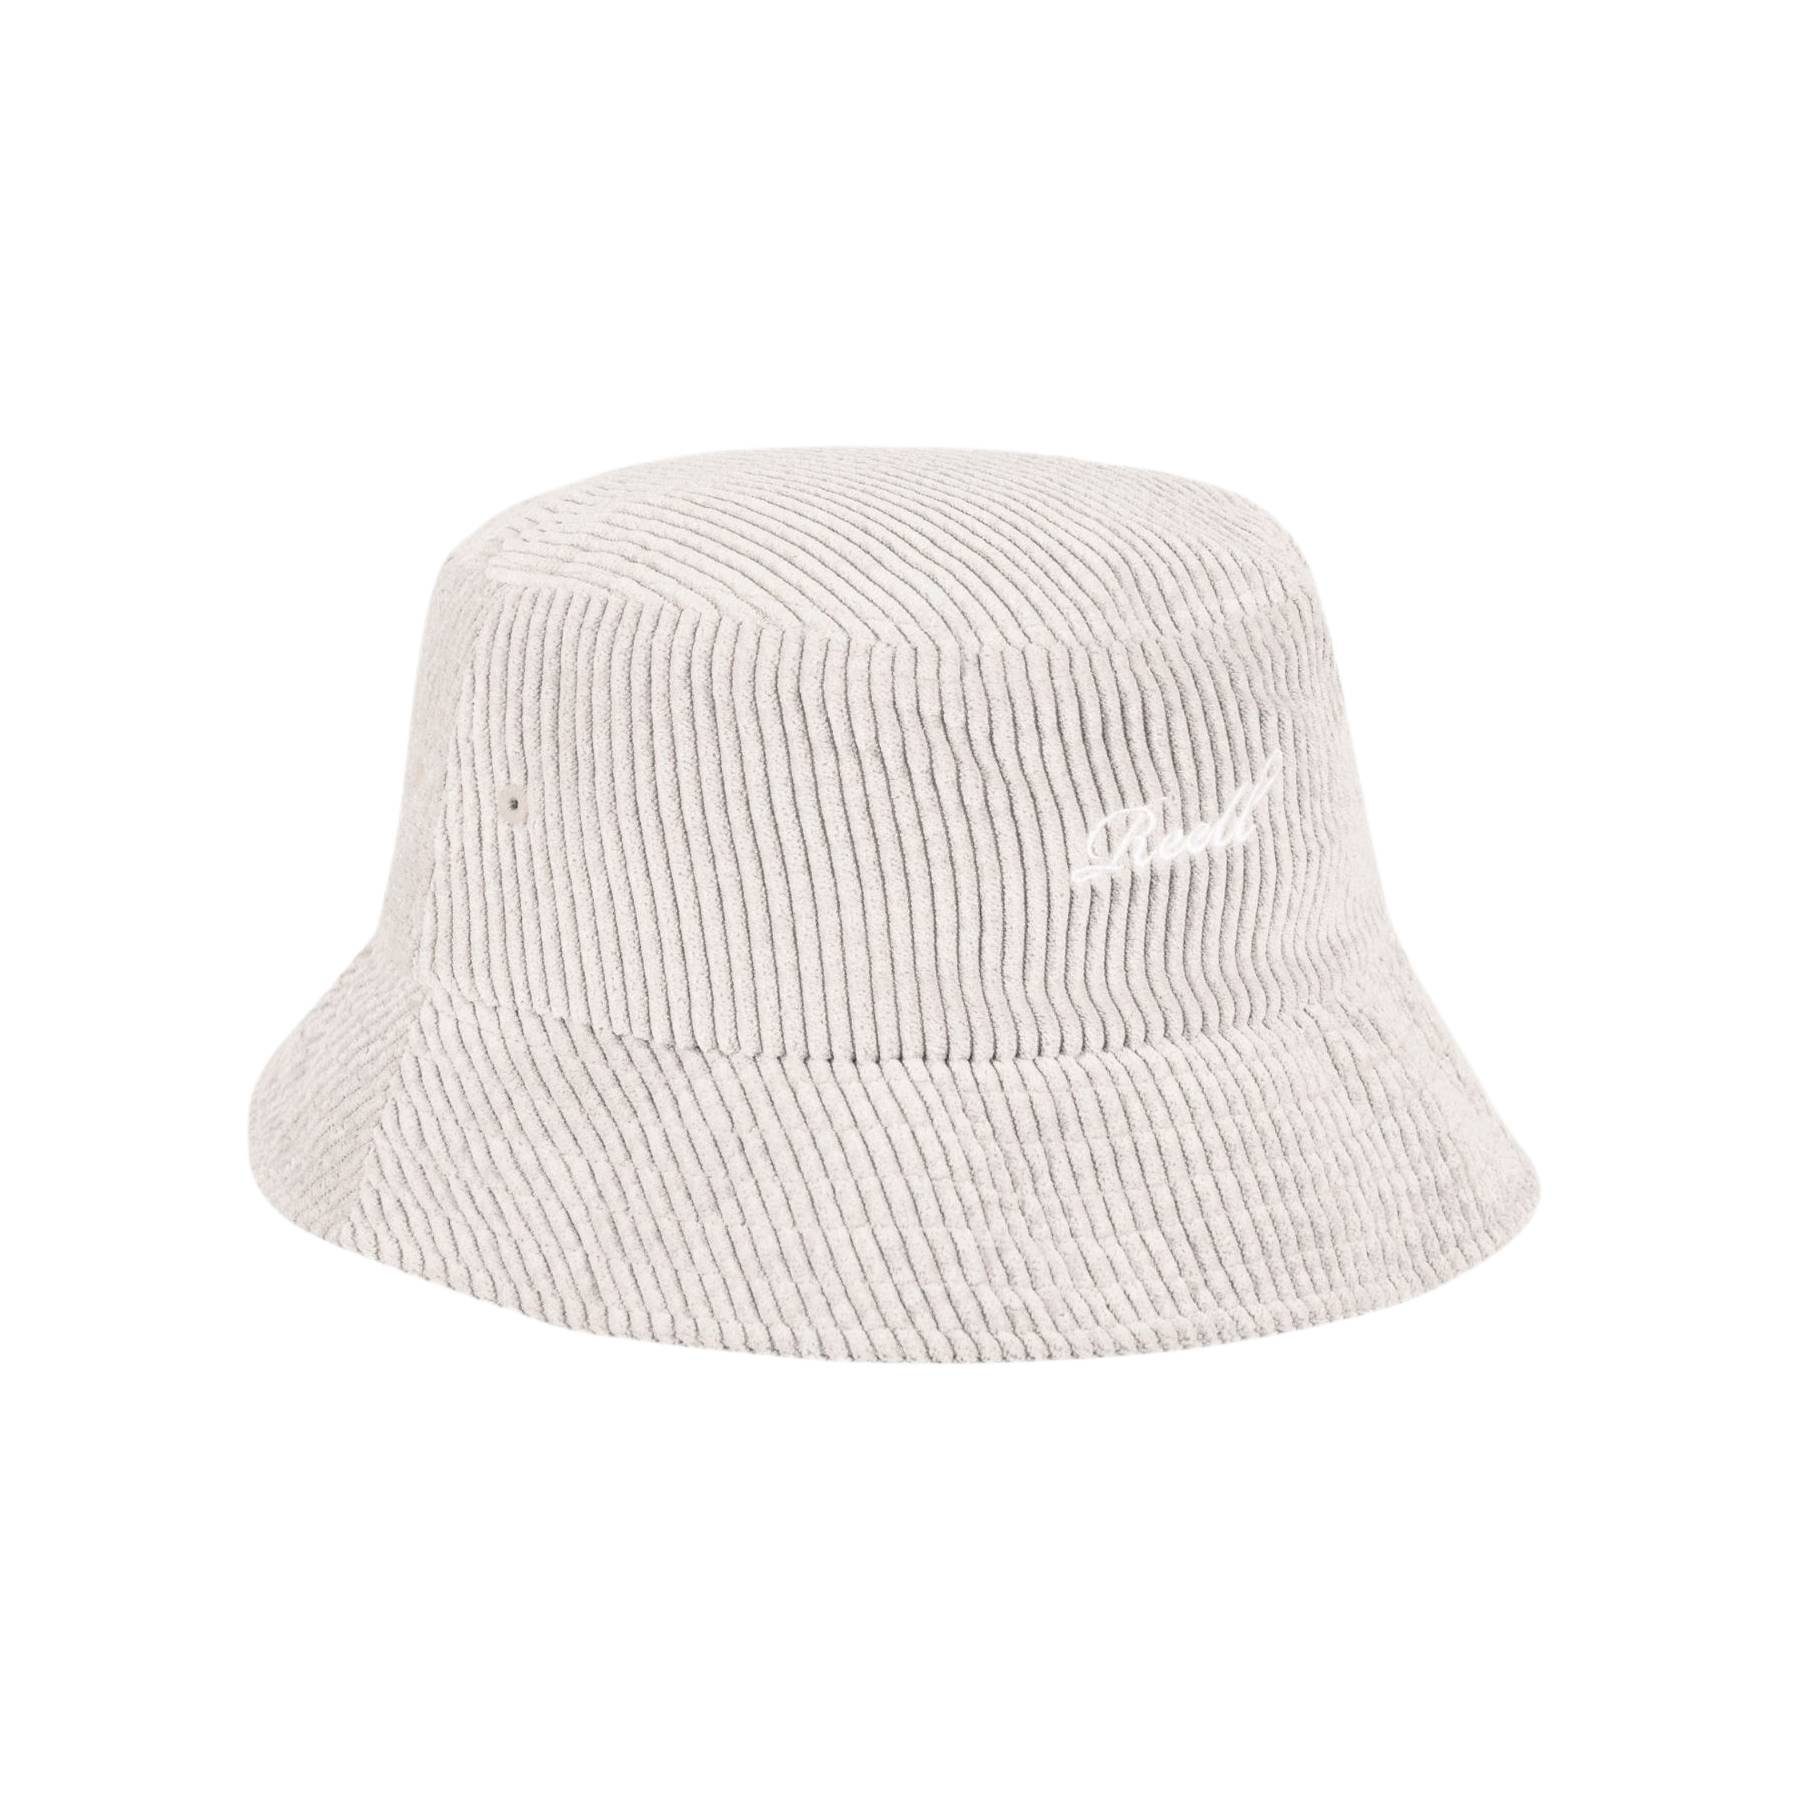 REELL Fischerhut Hut Reell Bucket Hat off white